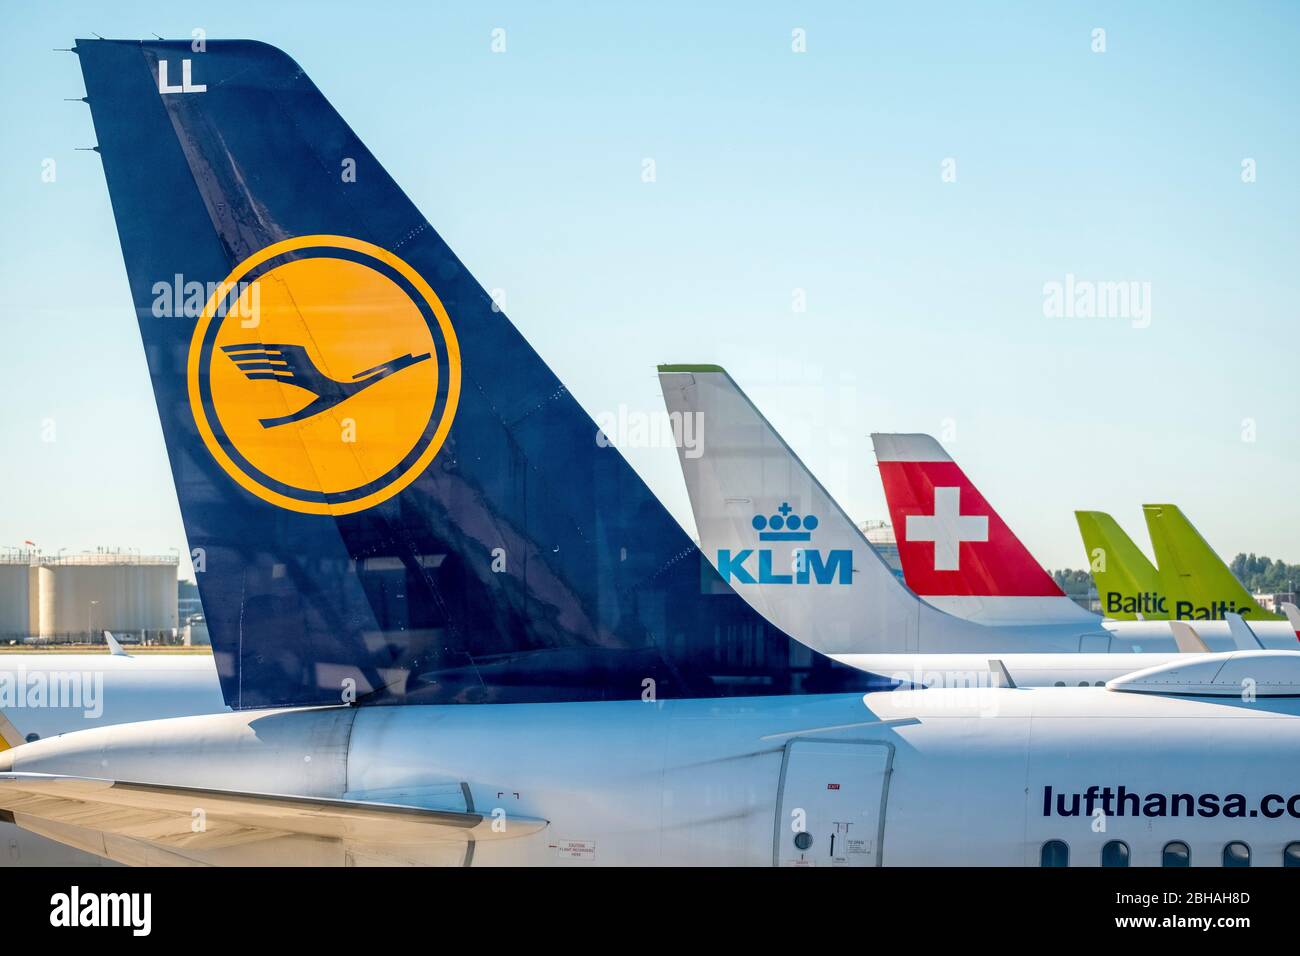 Vertikale Stabilisatoren der Fluggesellschaften Lufthansa, KLM, Swiss Air und Baltic Air am Flughafen Amsterdam Schiphol, Noord-Holland, Niederlande, Europa Stockfoto